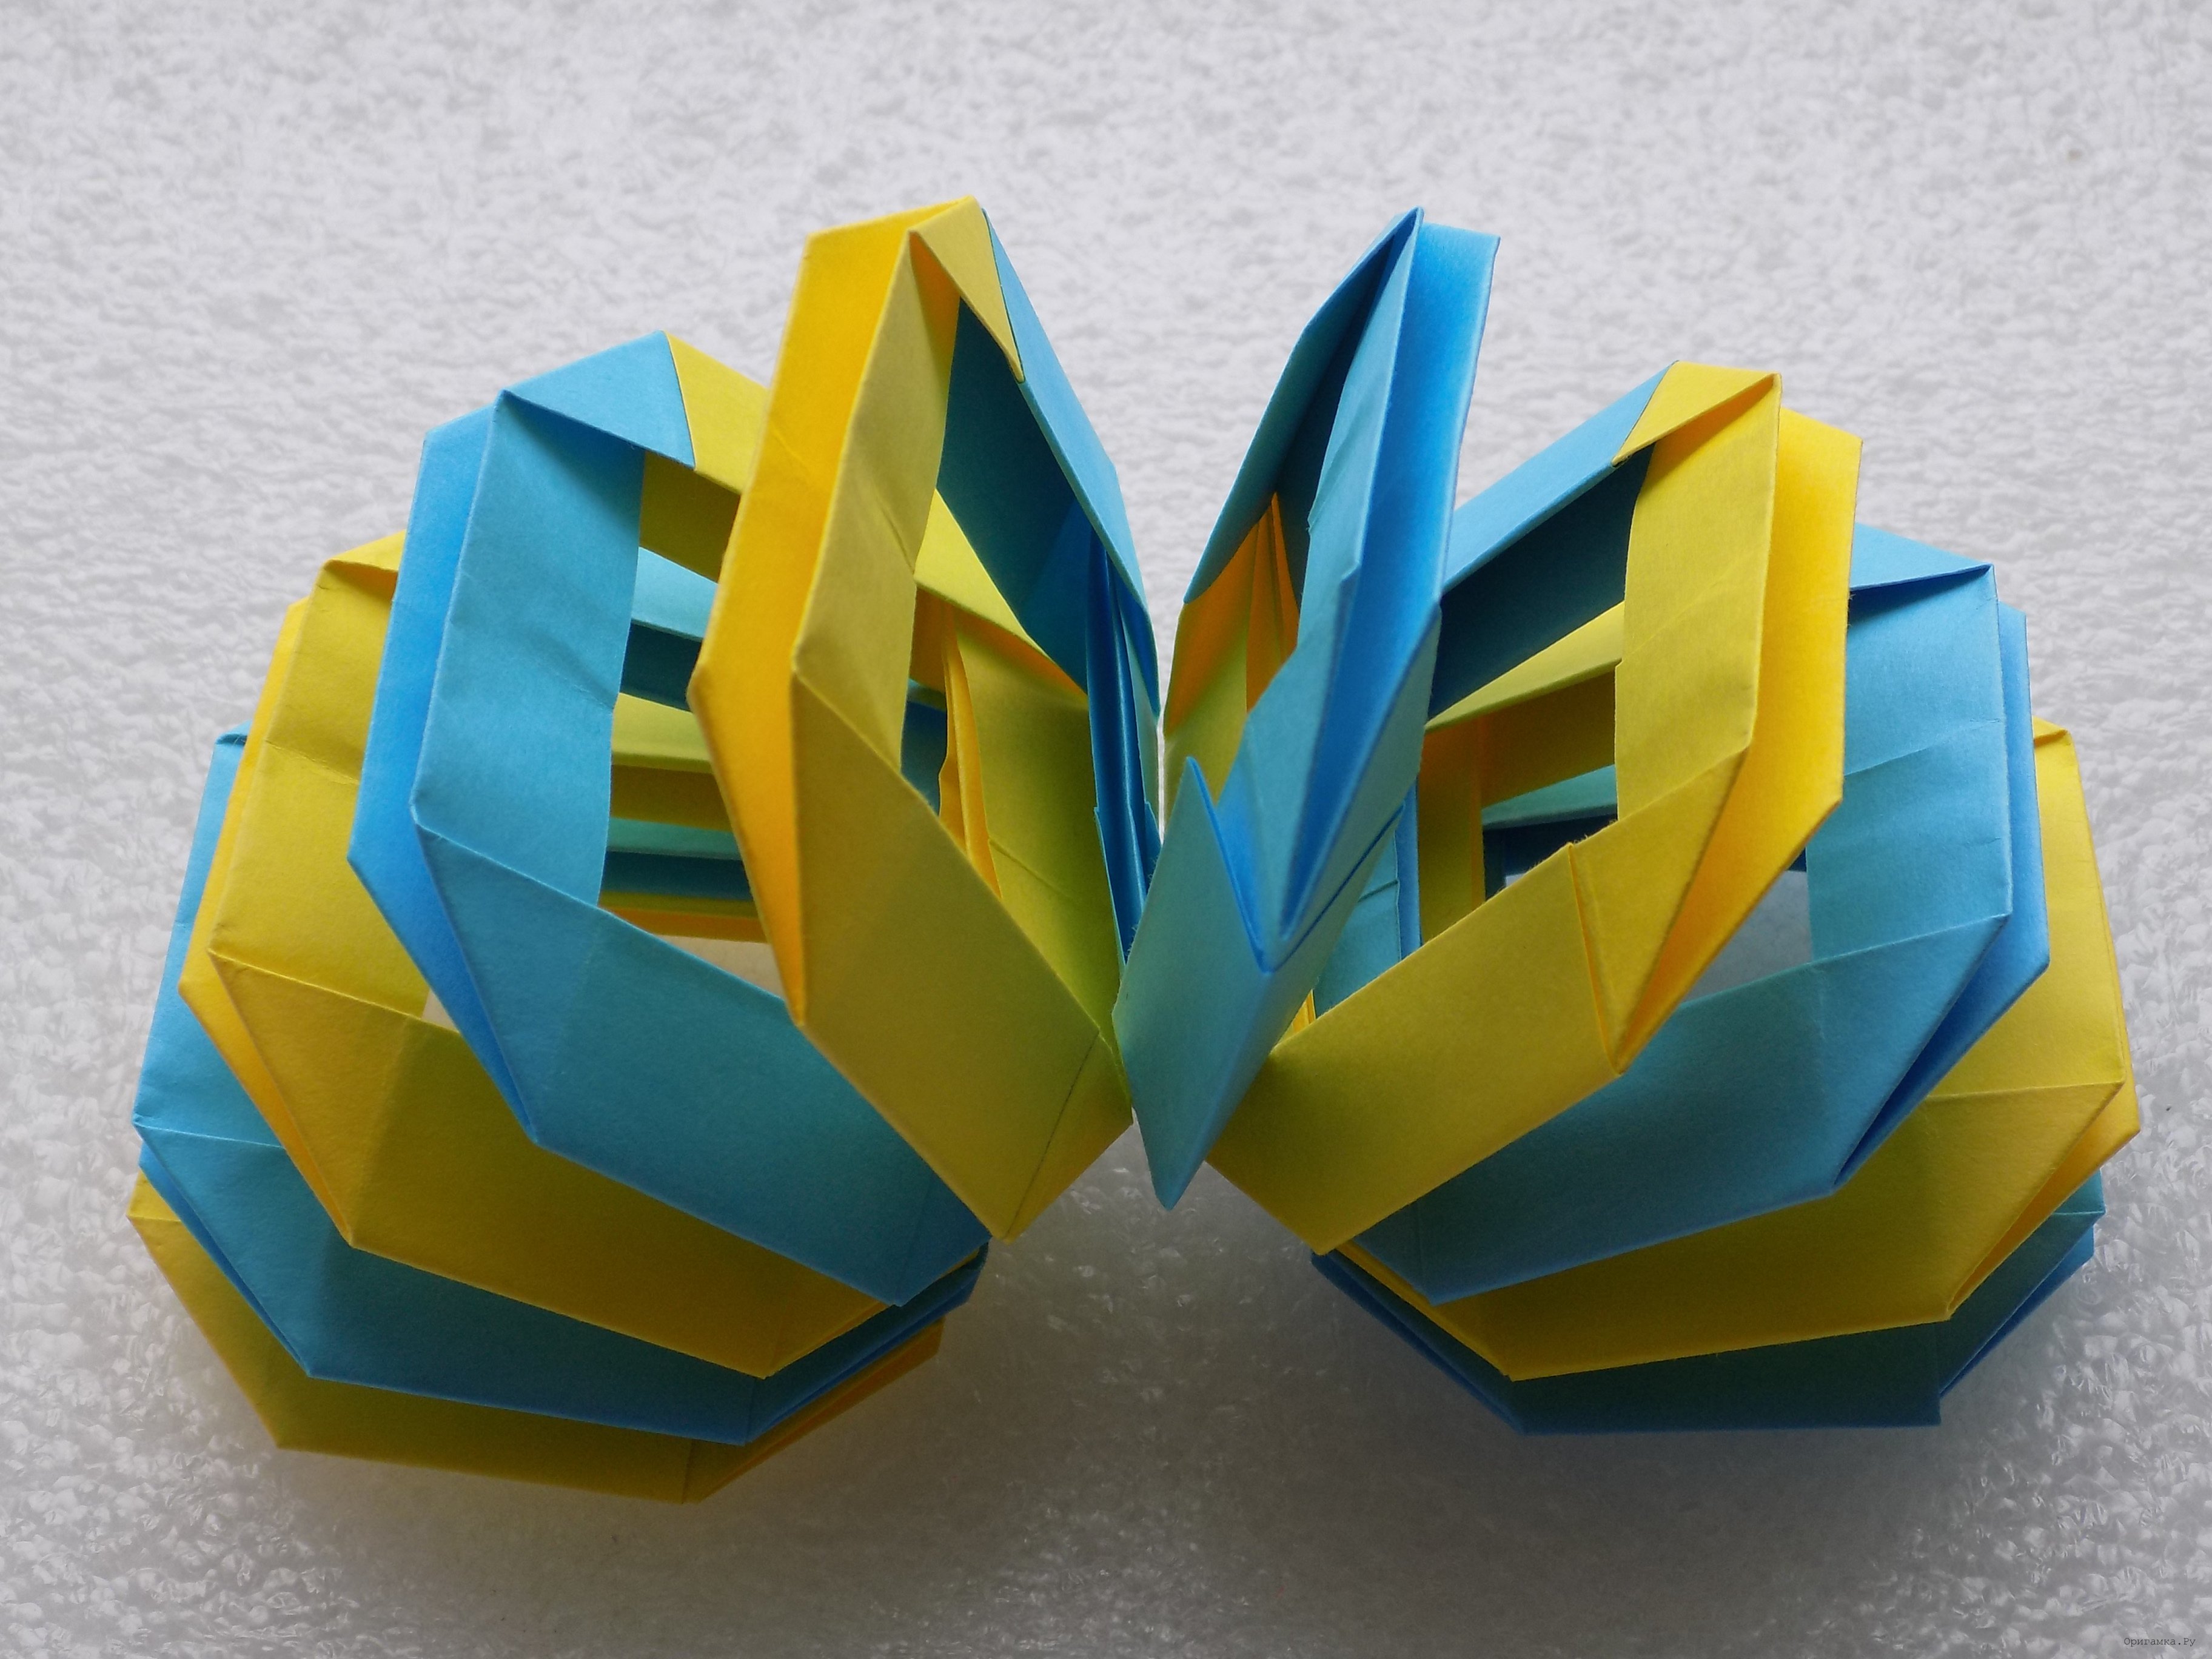 Модульное оригами для начинающих: советы и пошаговое описание схемы